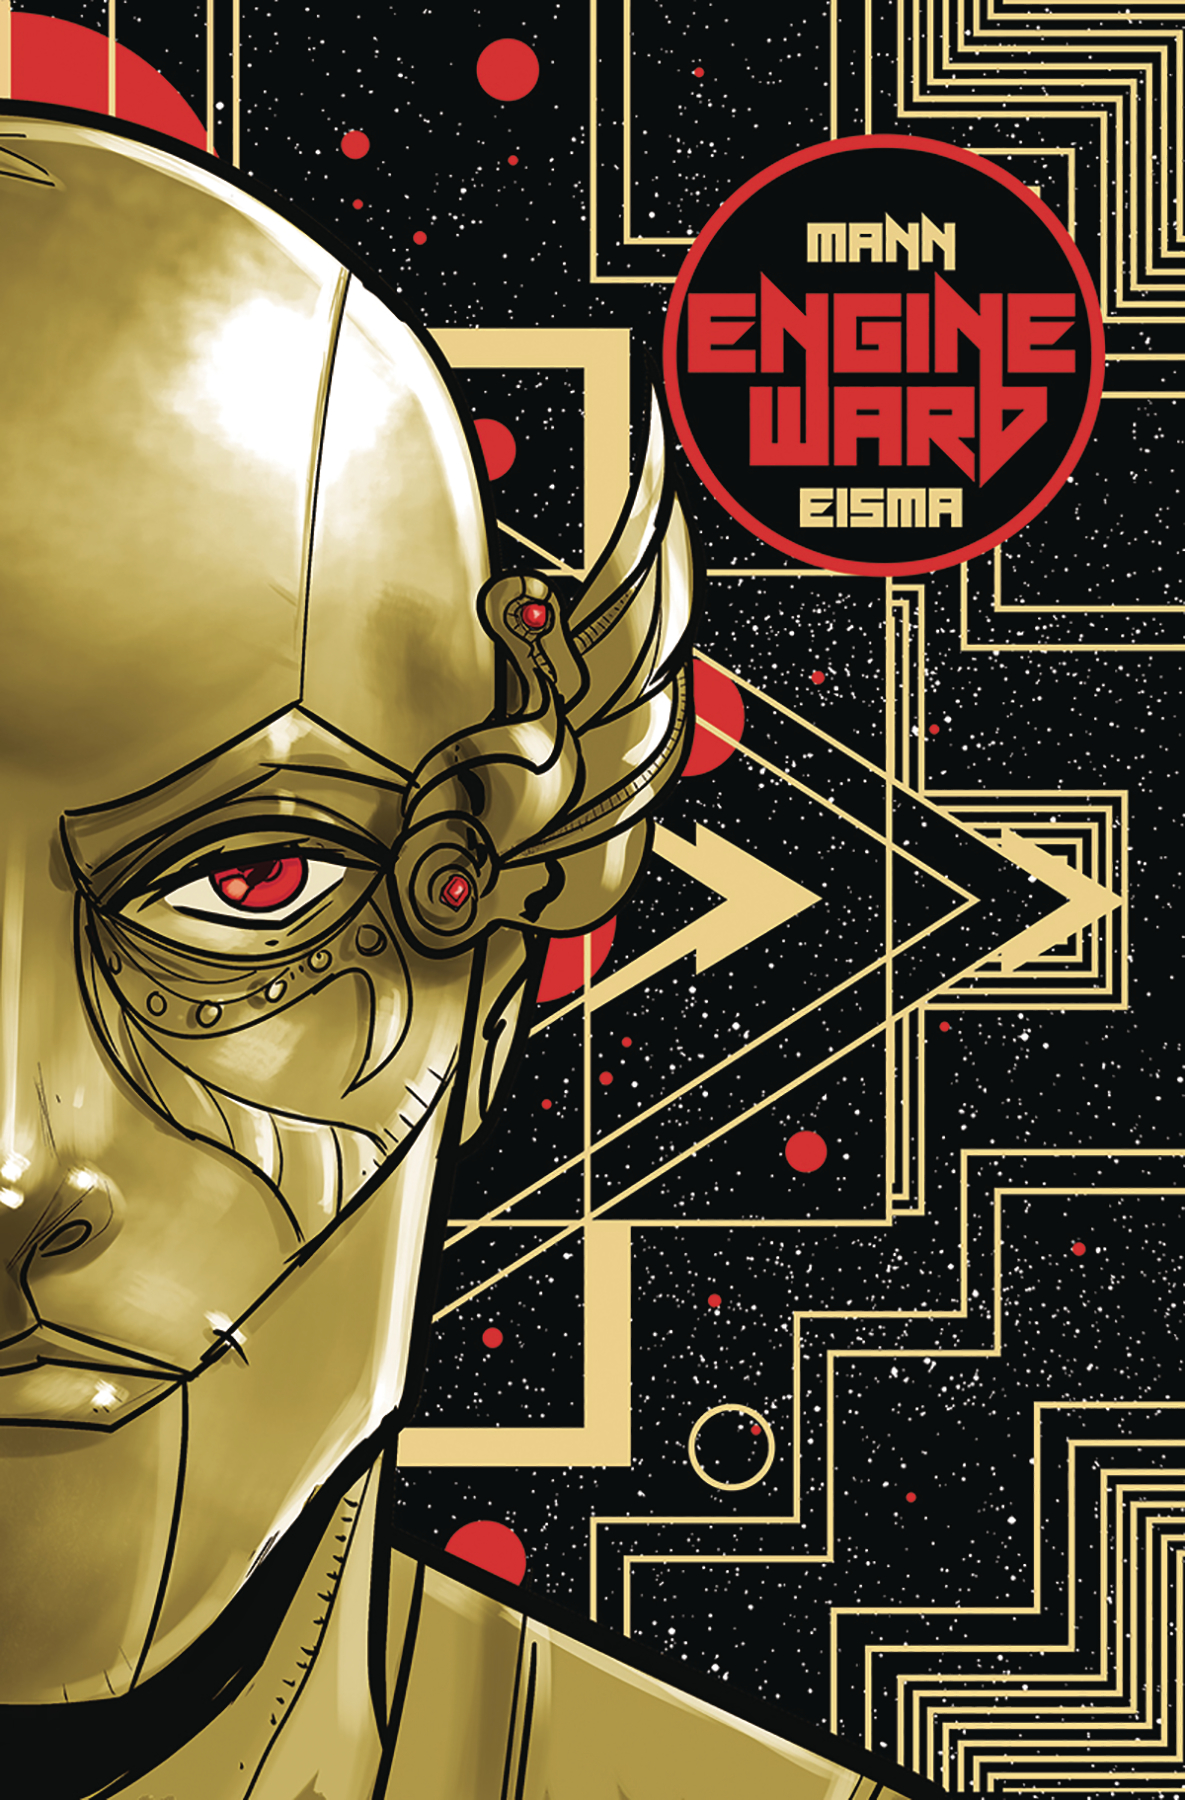 Engineward #1 Cover A Eisma (NET)